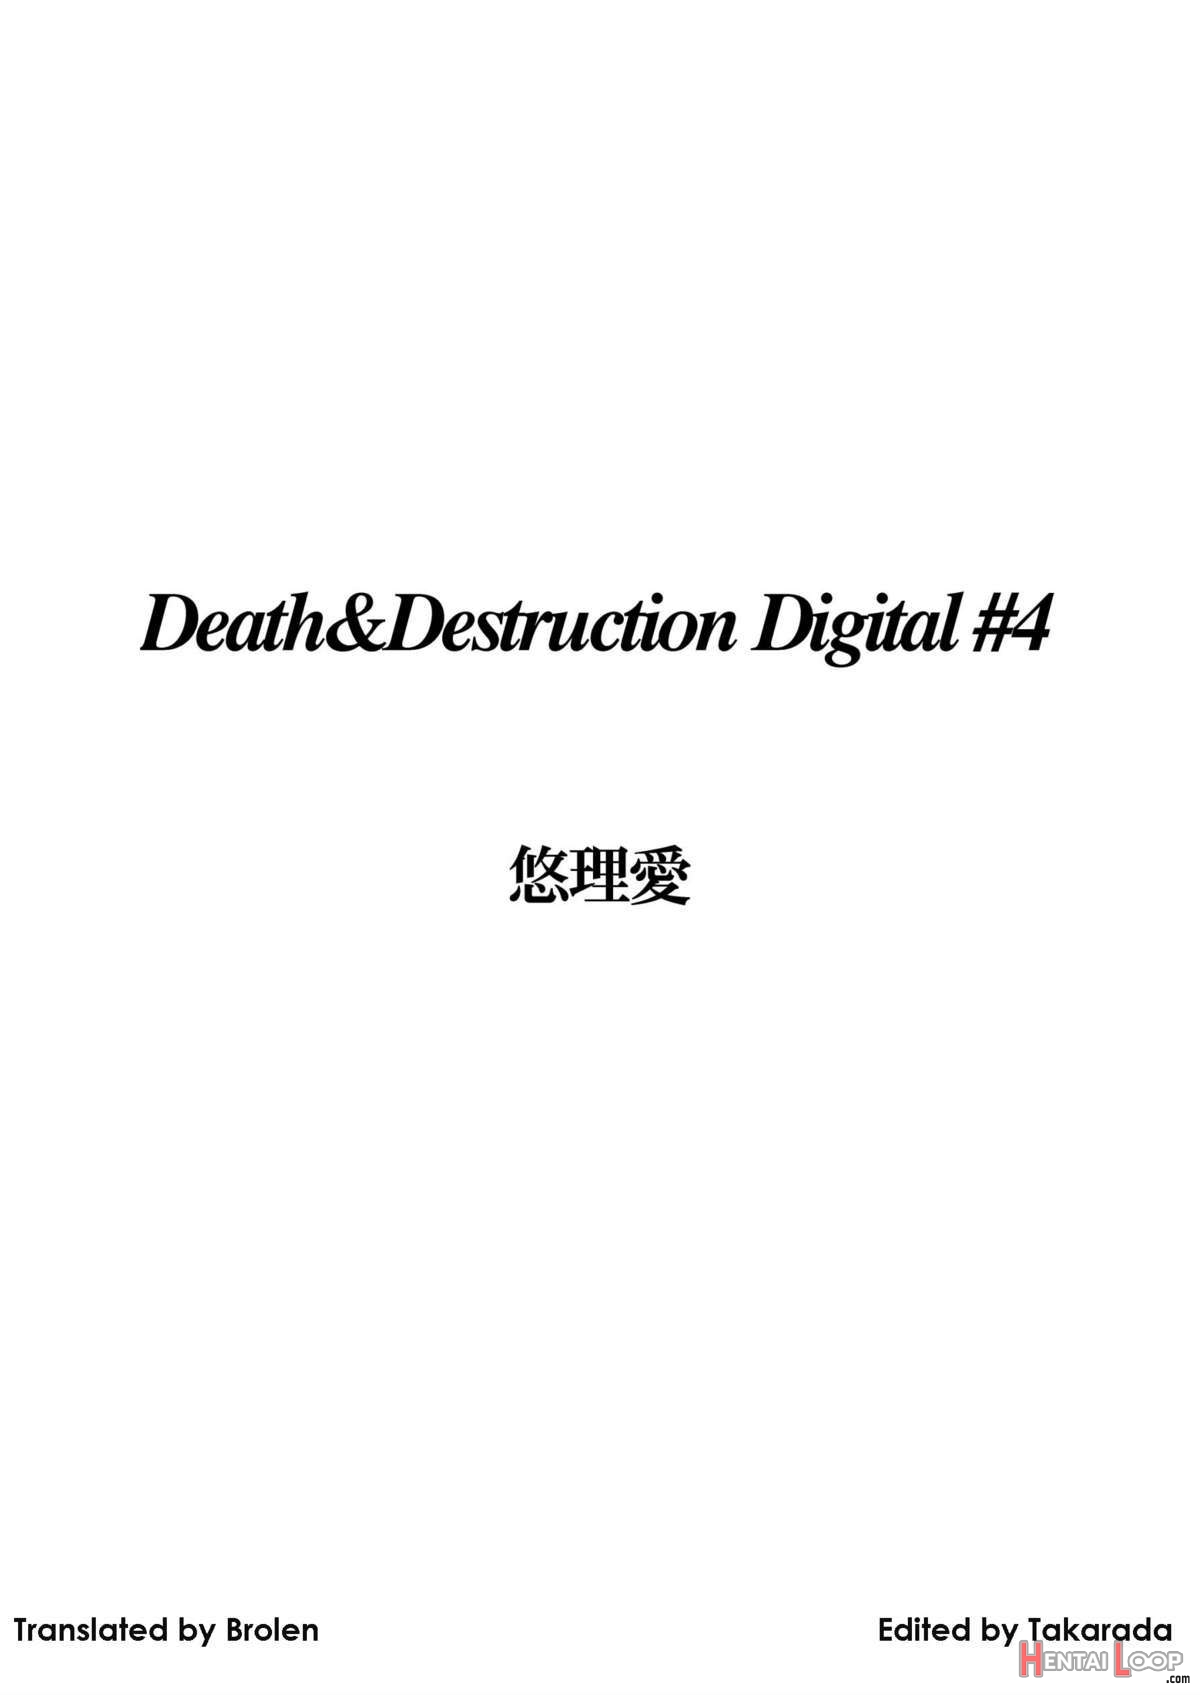 Death & Destruction #4 page 2